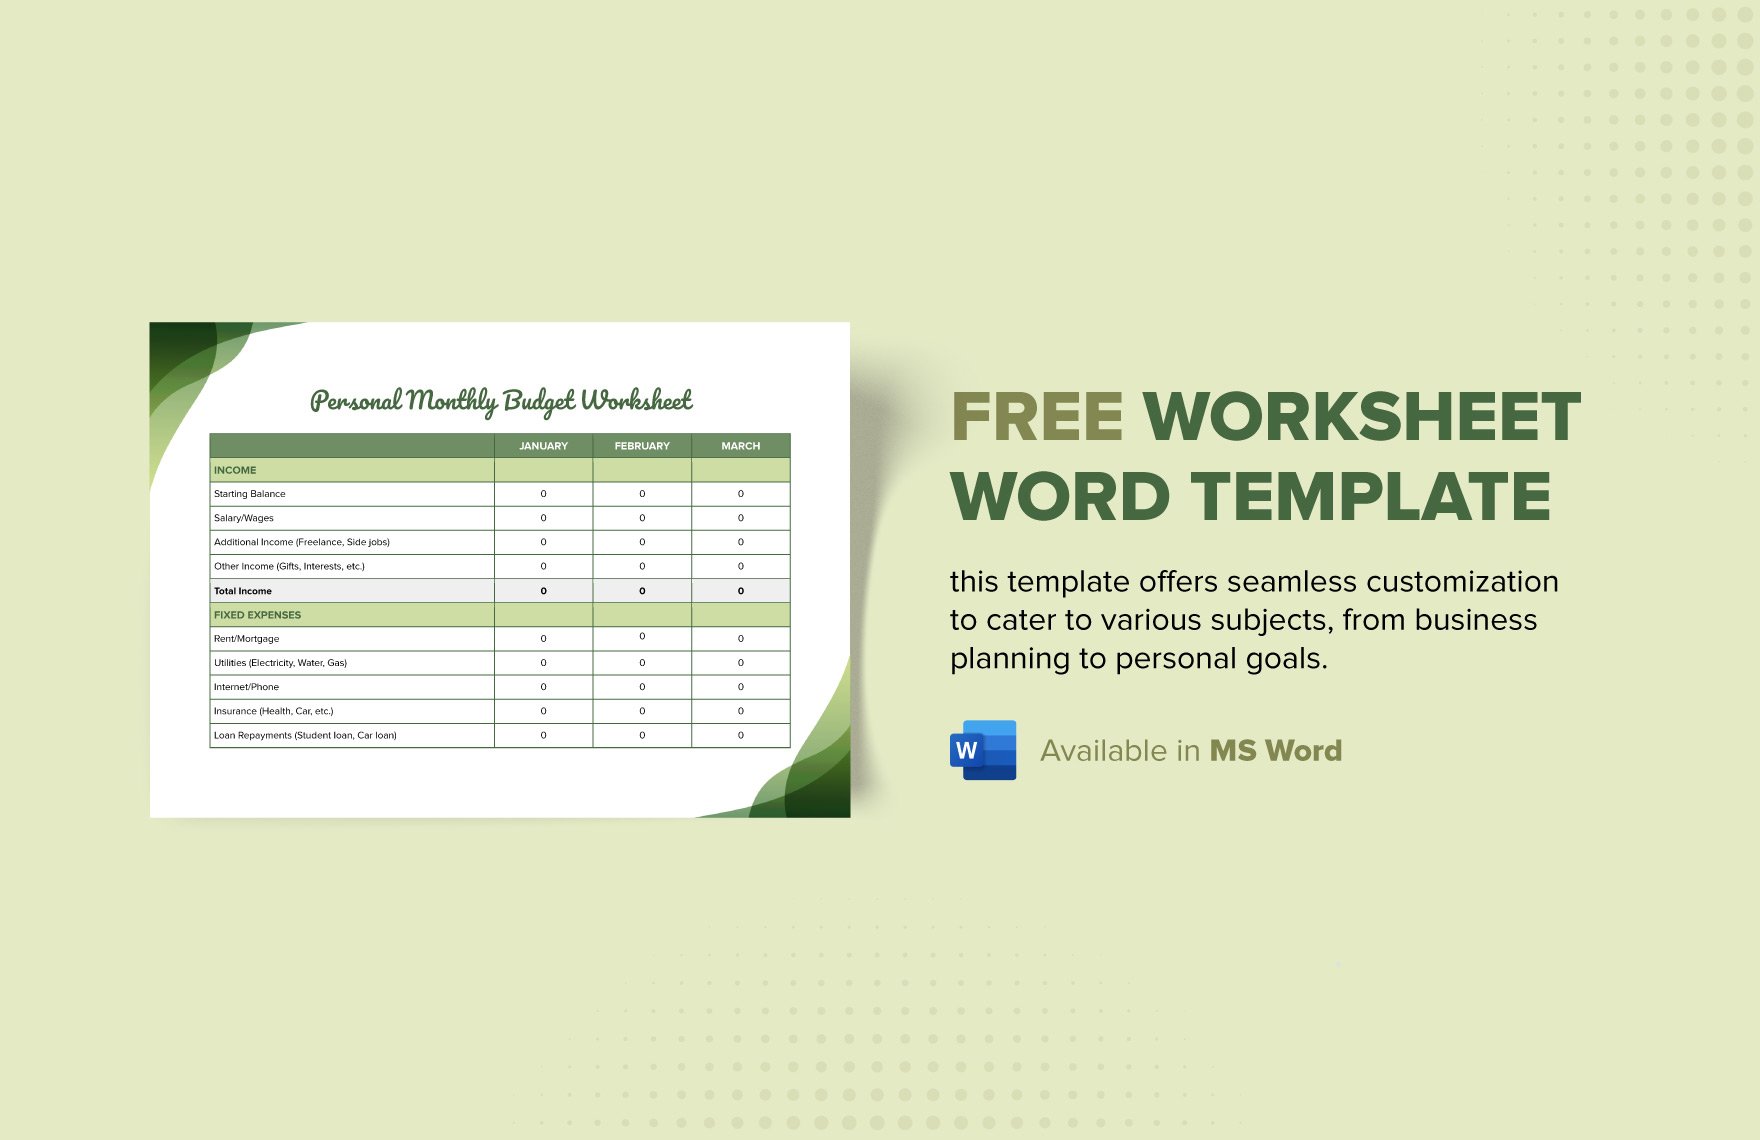 Free Worksheet Word Template in Word